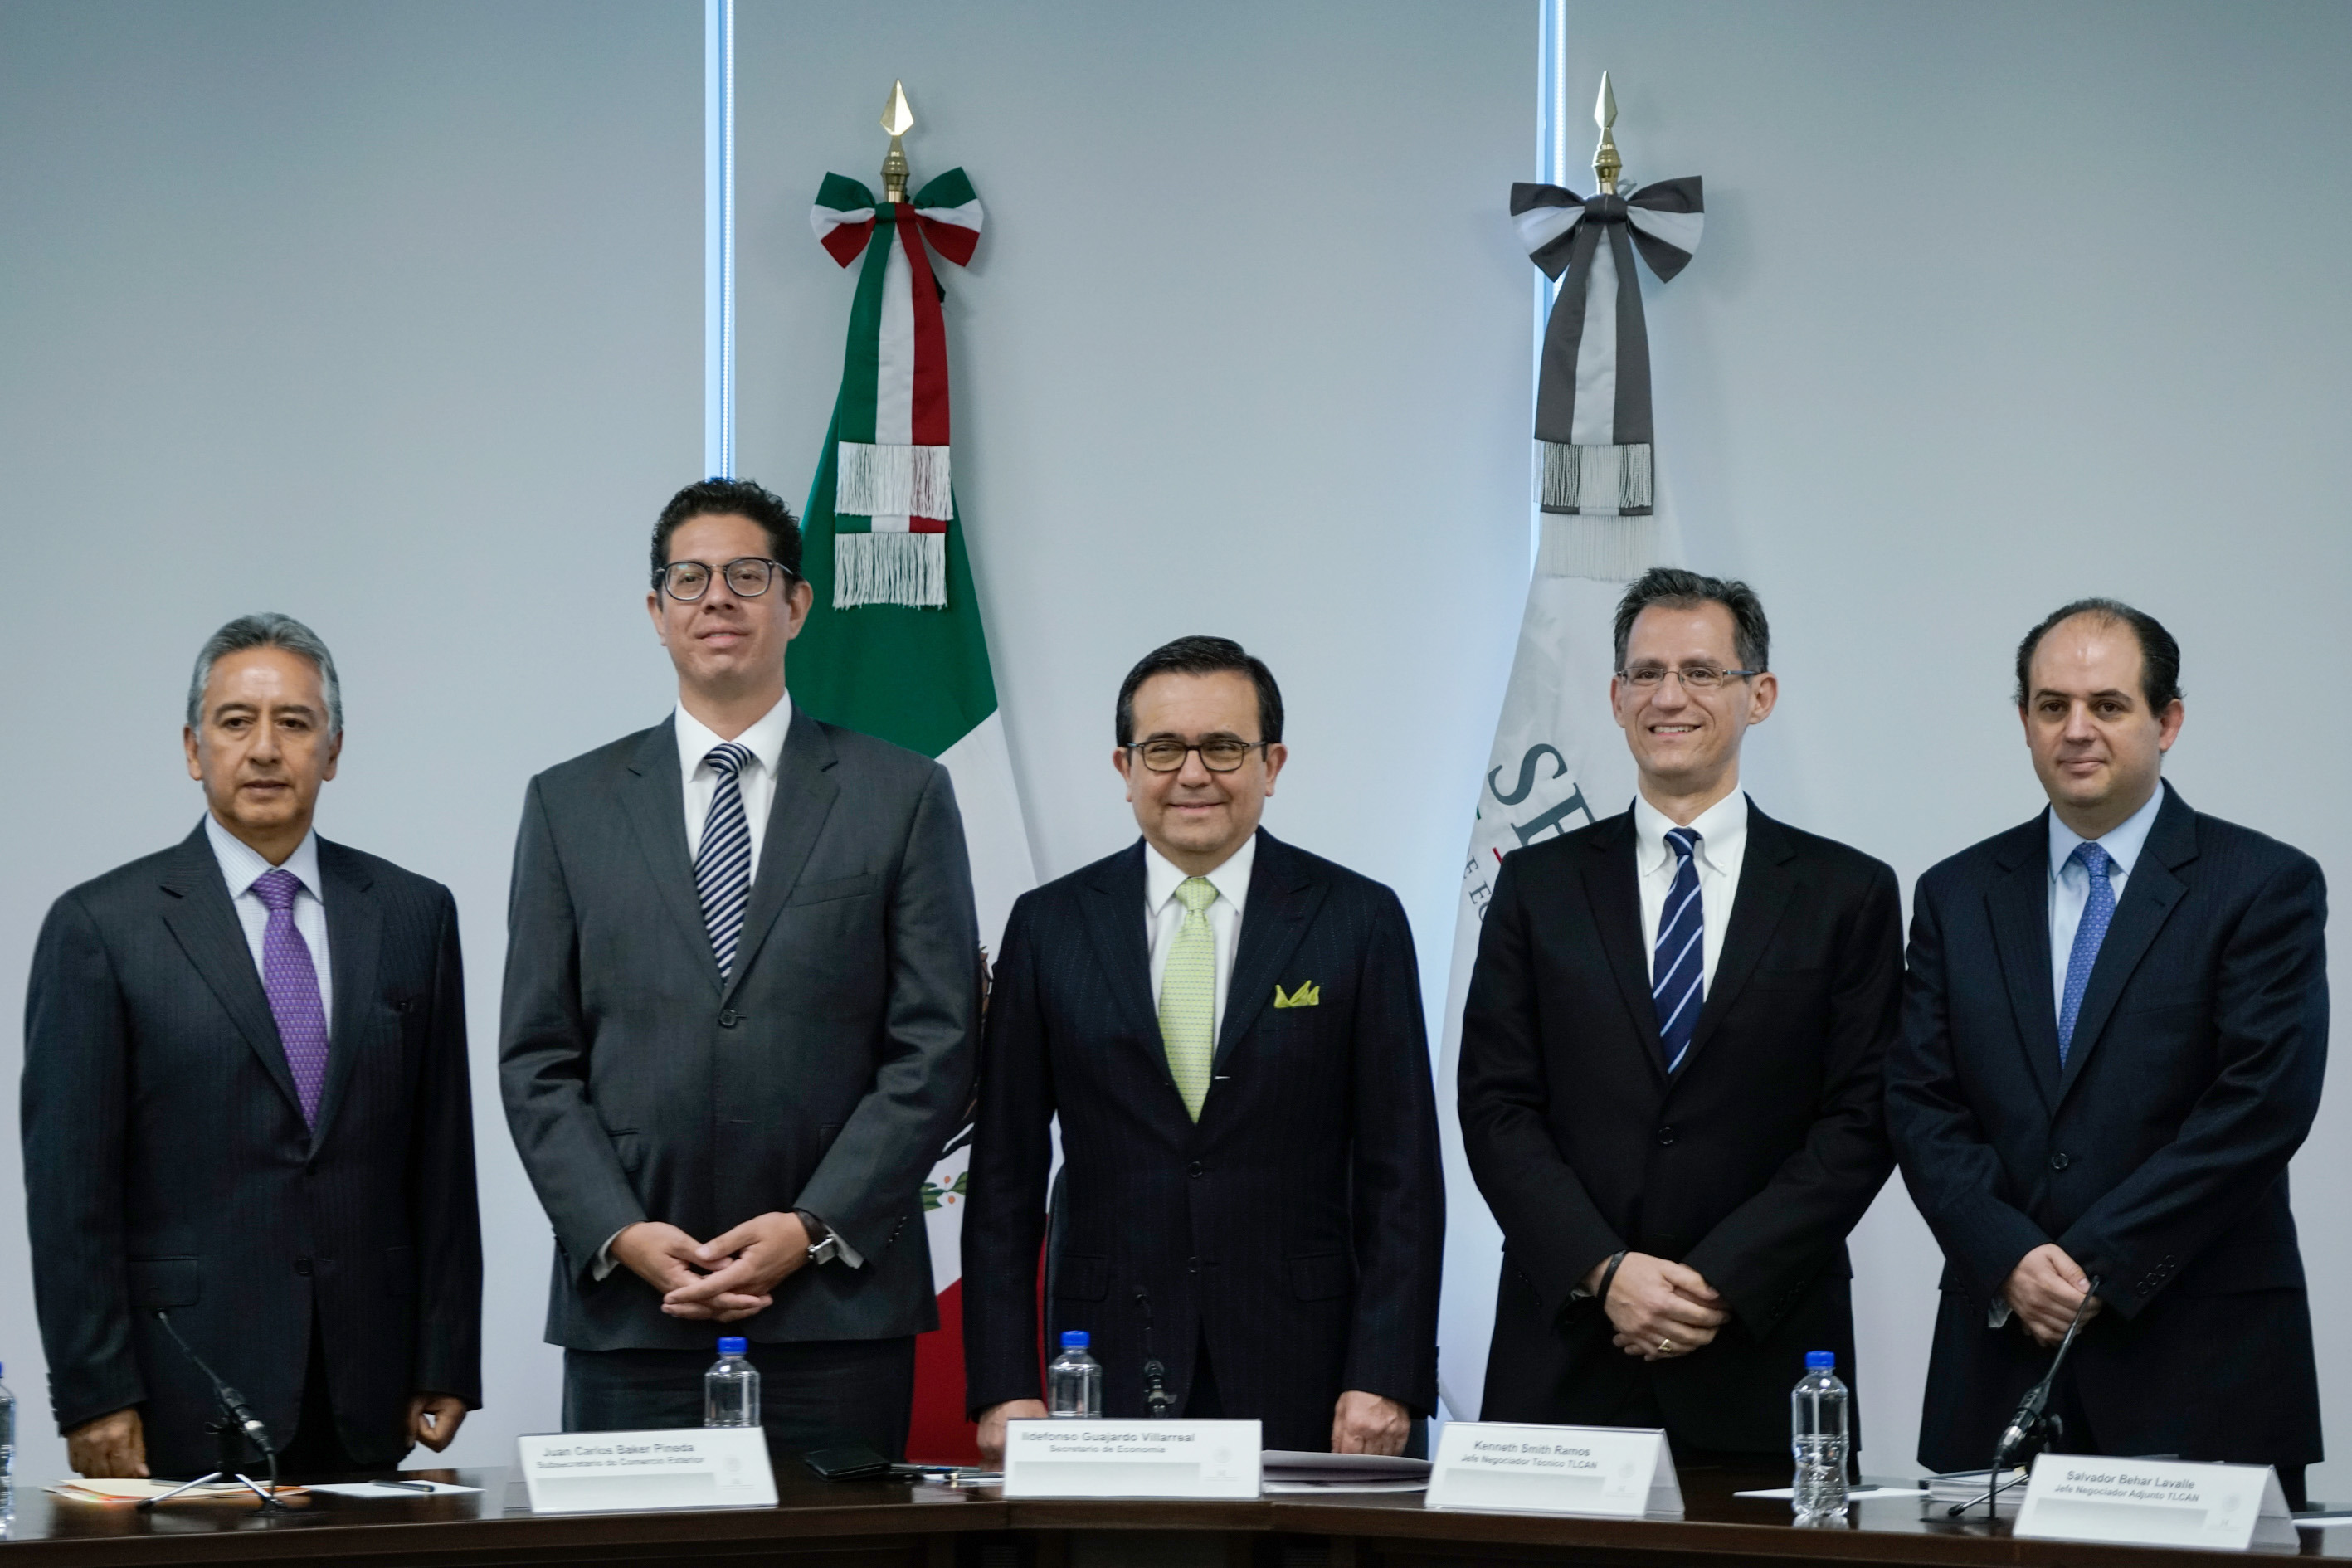 México define cuatro prioridades en renegociación del TLCAN